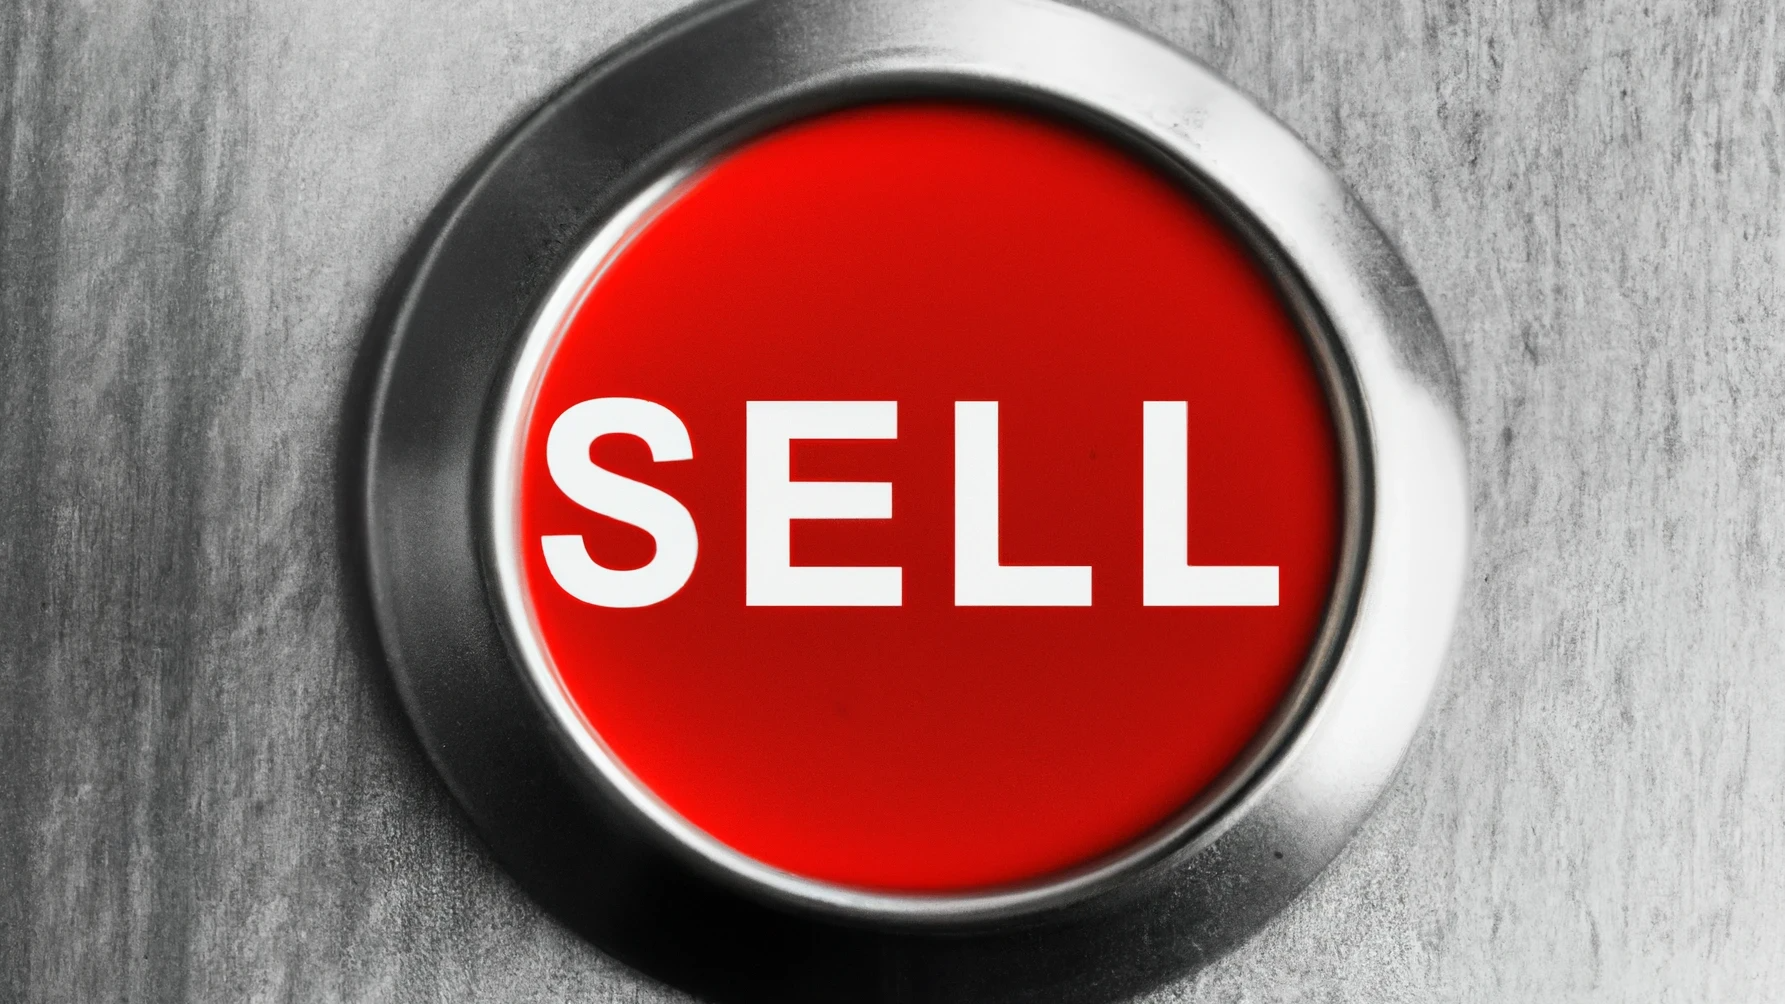 Ein roter Knopf mit der Aufschrift "Sell" ("Verkaufen")